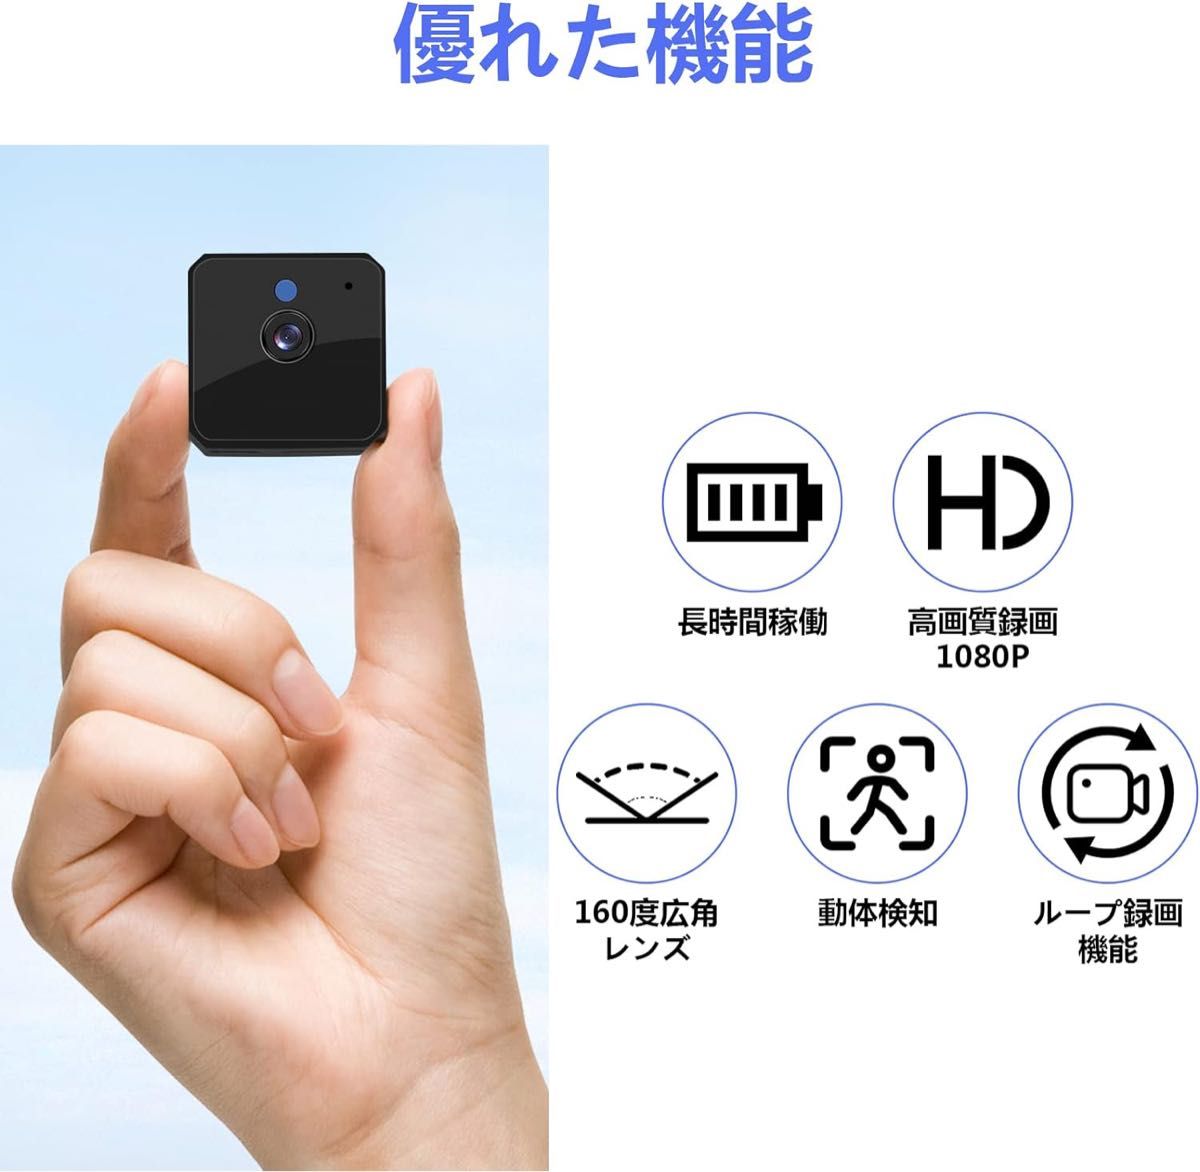 小型カメラ 防犯カメラ 1080P リチウム電池内蔵 128GB対応 長時間録画 動体検知 日本語取扱付き